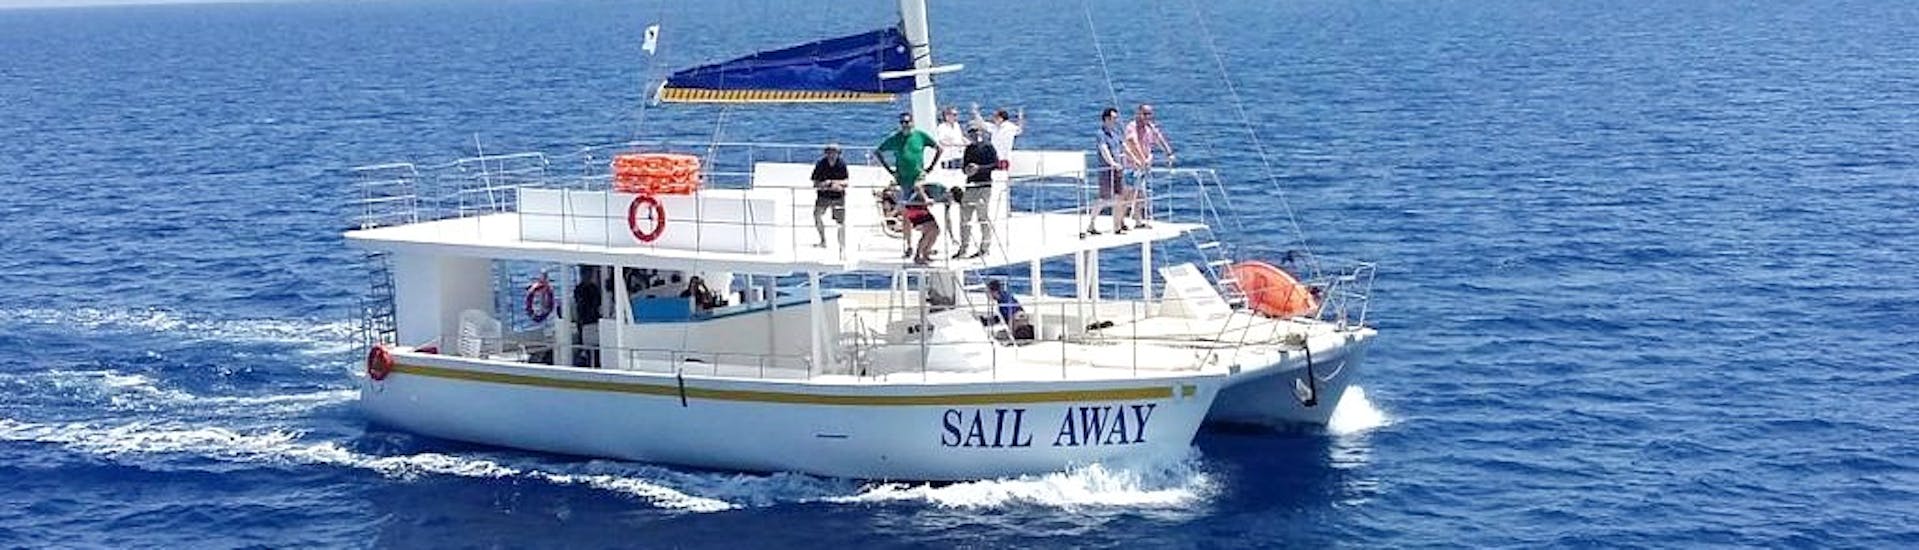 Photo du catamaran Sail Away utilisé par Relax-Cruises Limassol pour les balades.